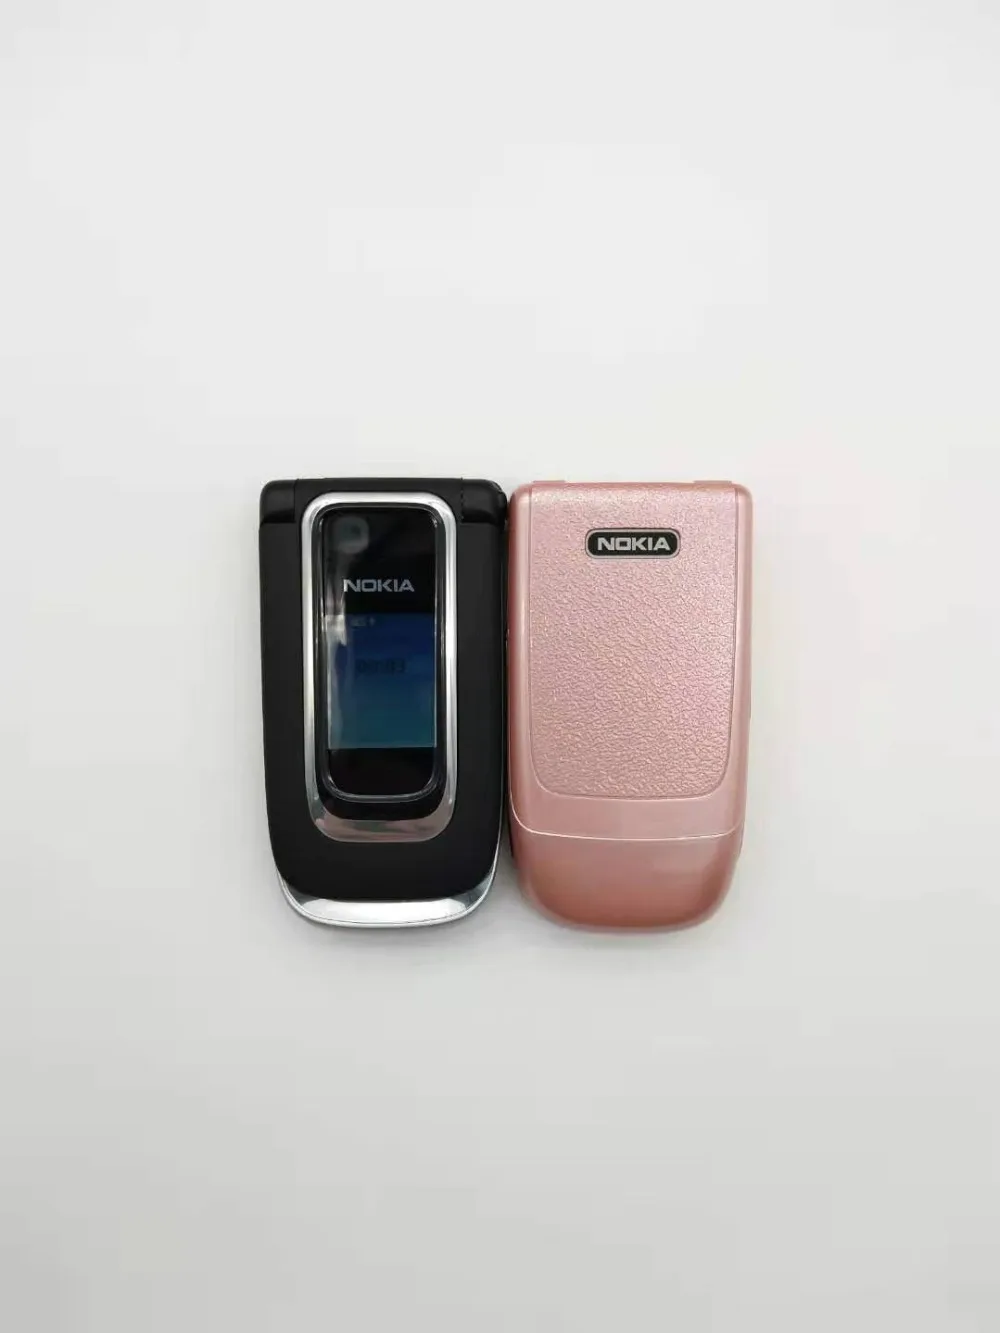 Разблокирована 6131 Оригинальный Мобильный телефон Nokia 6131 дешевые GSM камера FM Bluetooth хорошее качество бесплатная доставка